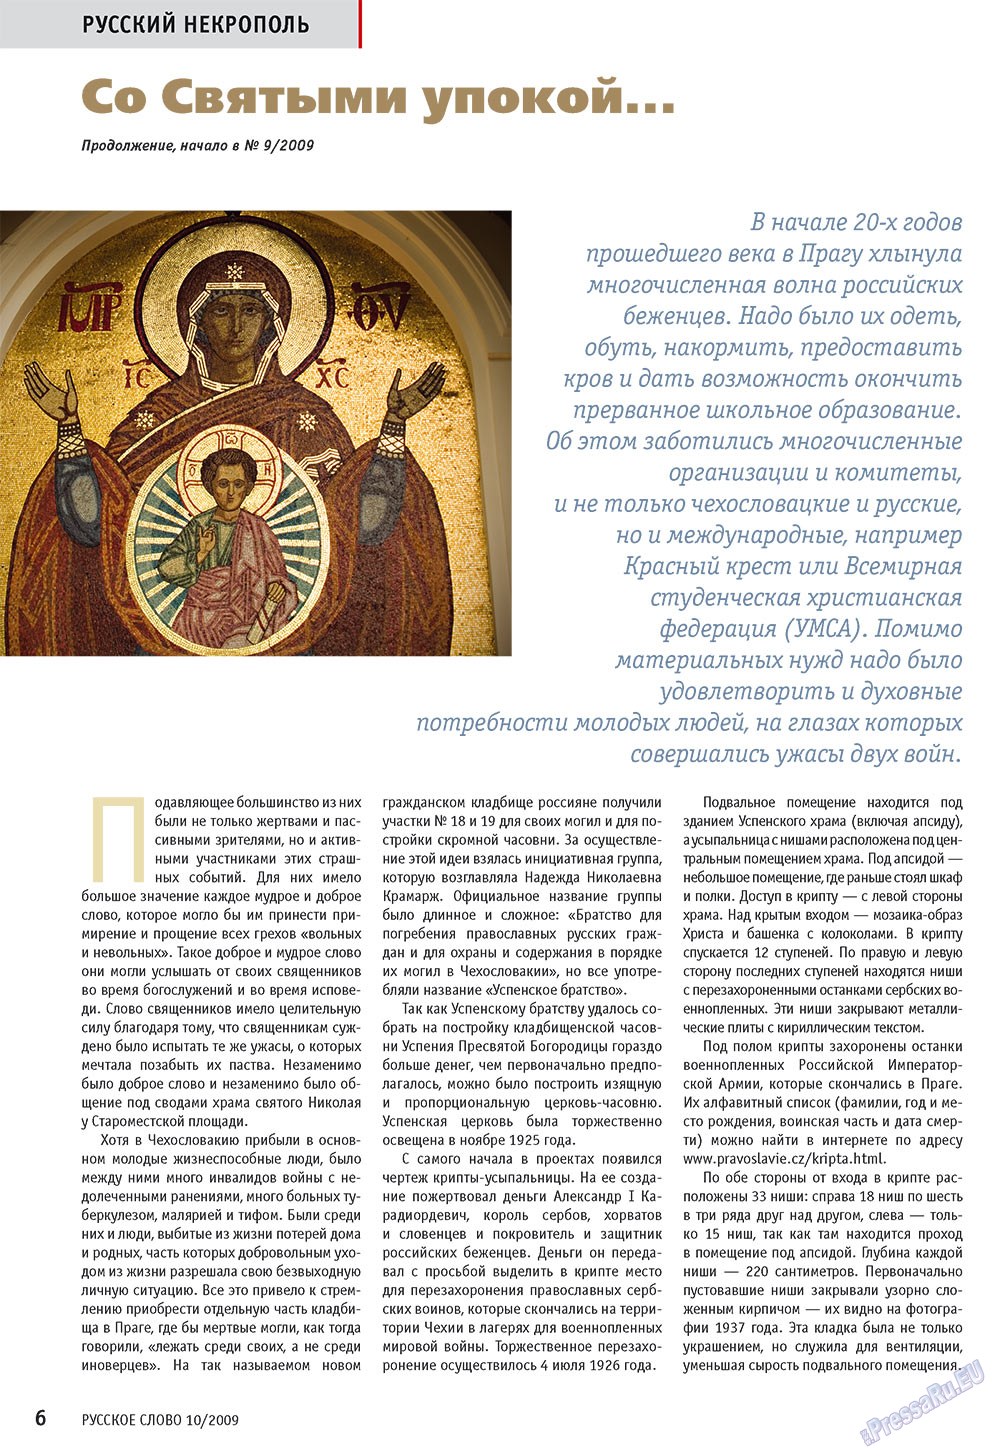 Русское слово, журнал. 2009 №10 стр.8